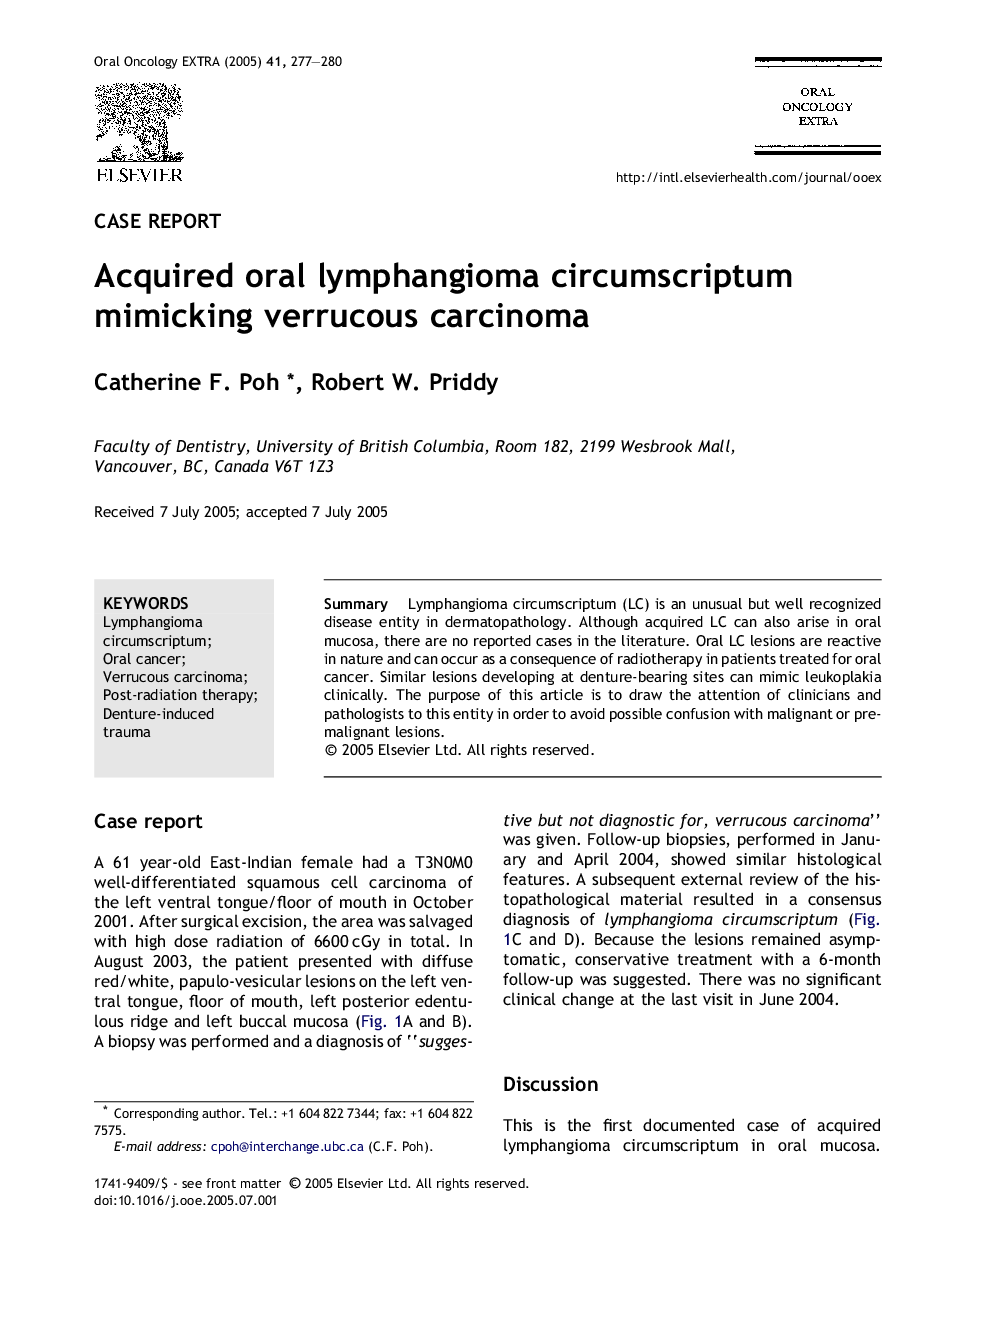 Acquired oral lymphangioma circumscriptum mimicking verrucous carcinoma